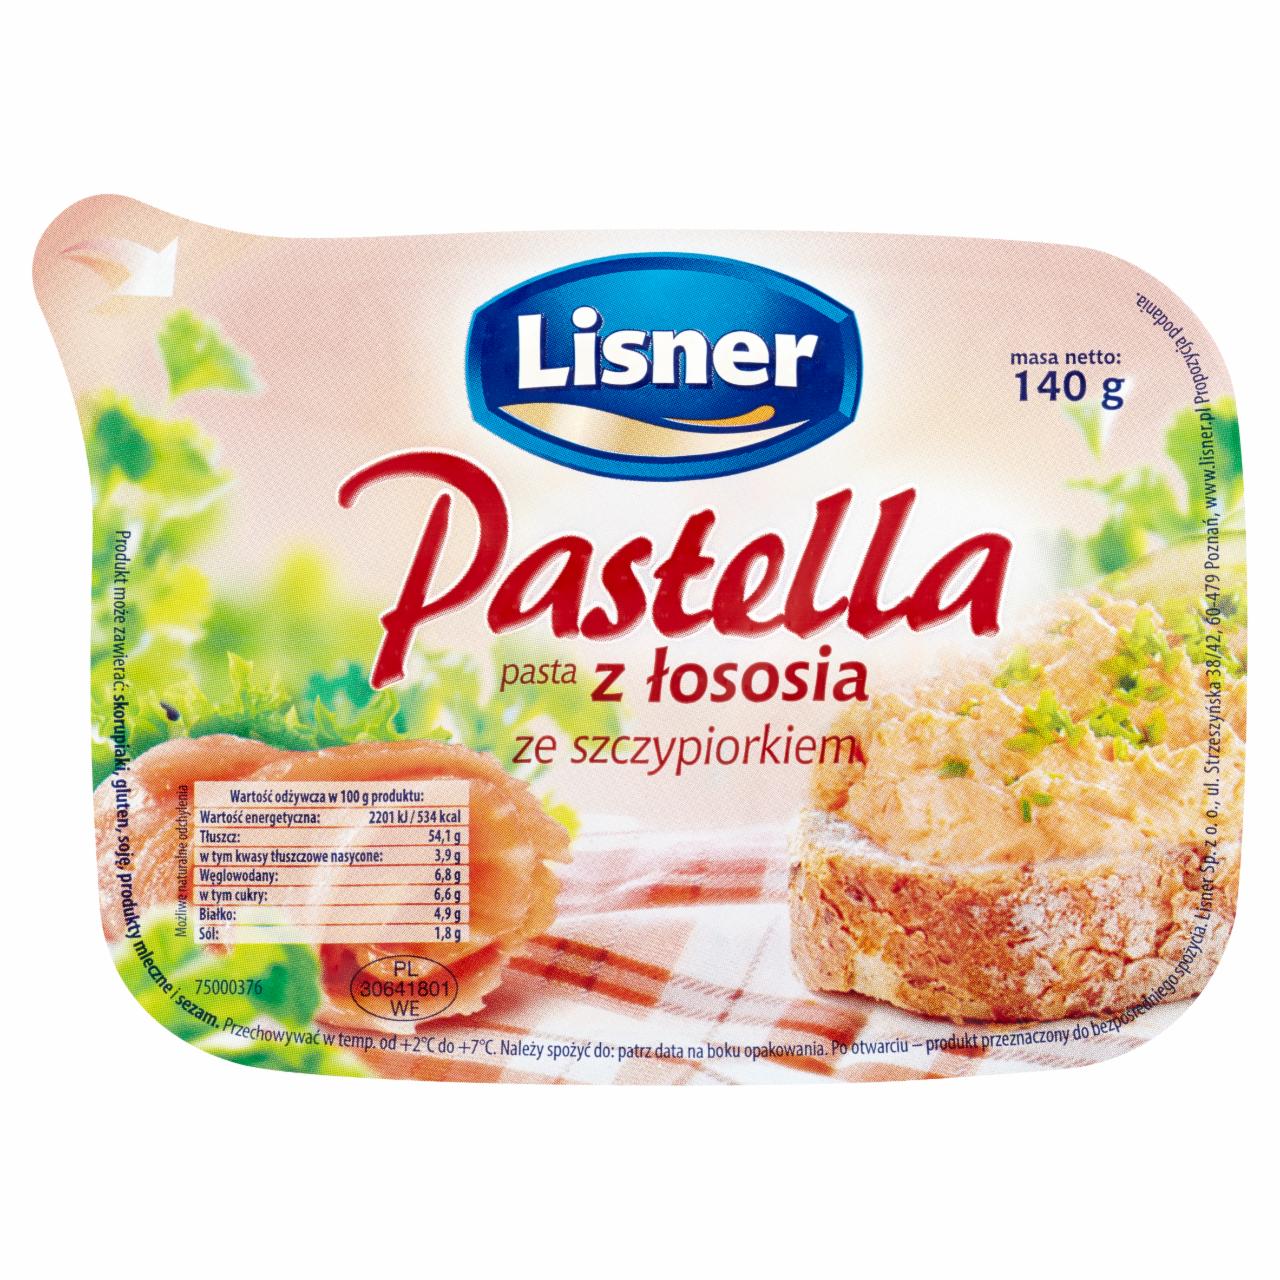 Zdjęcia - Lisner Pastella Pasta z łososia ze szczypiorkiem 140 g